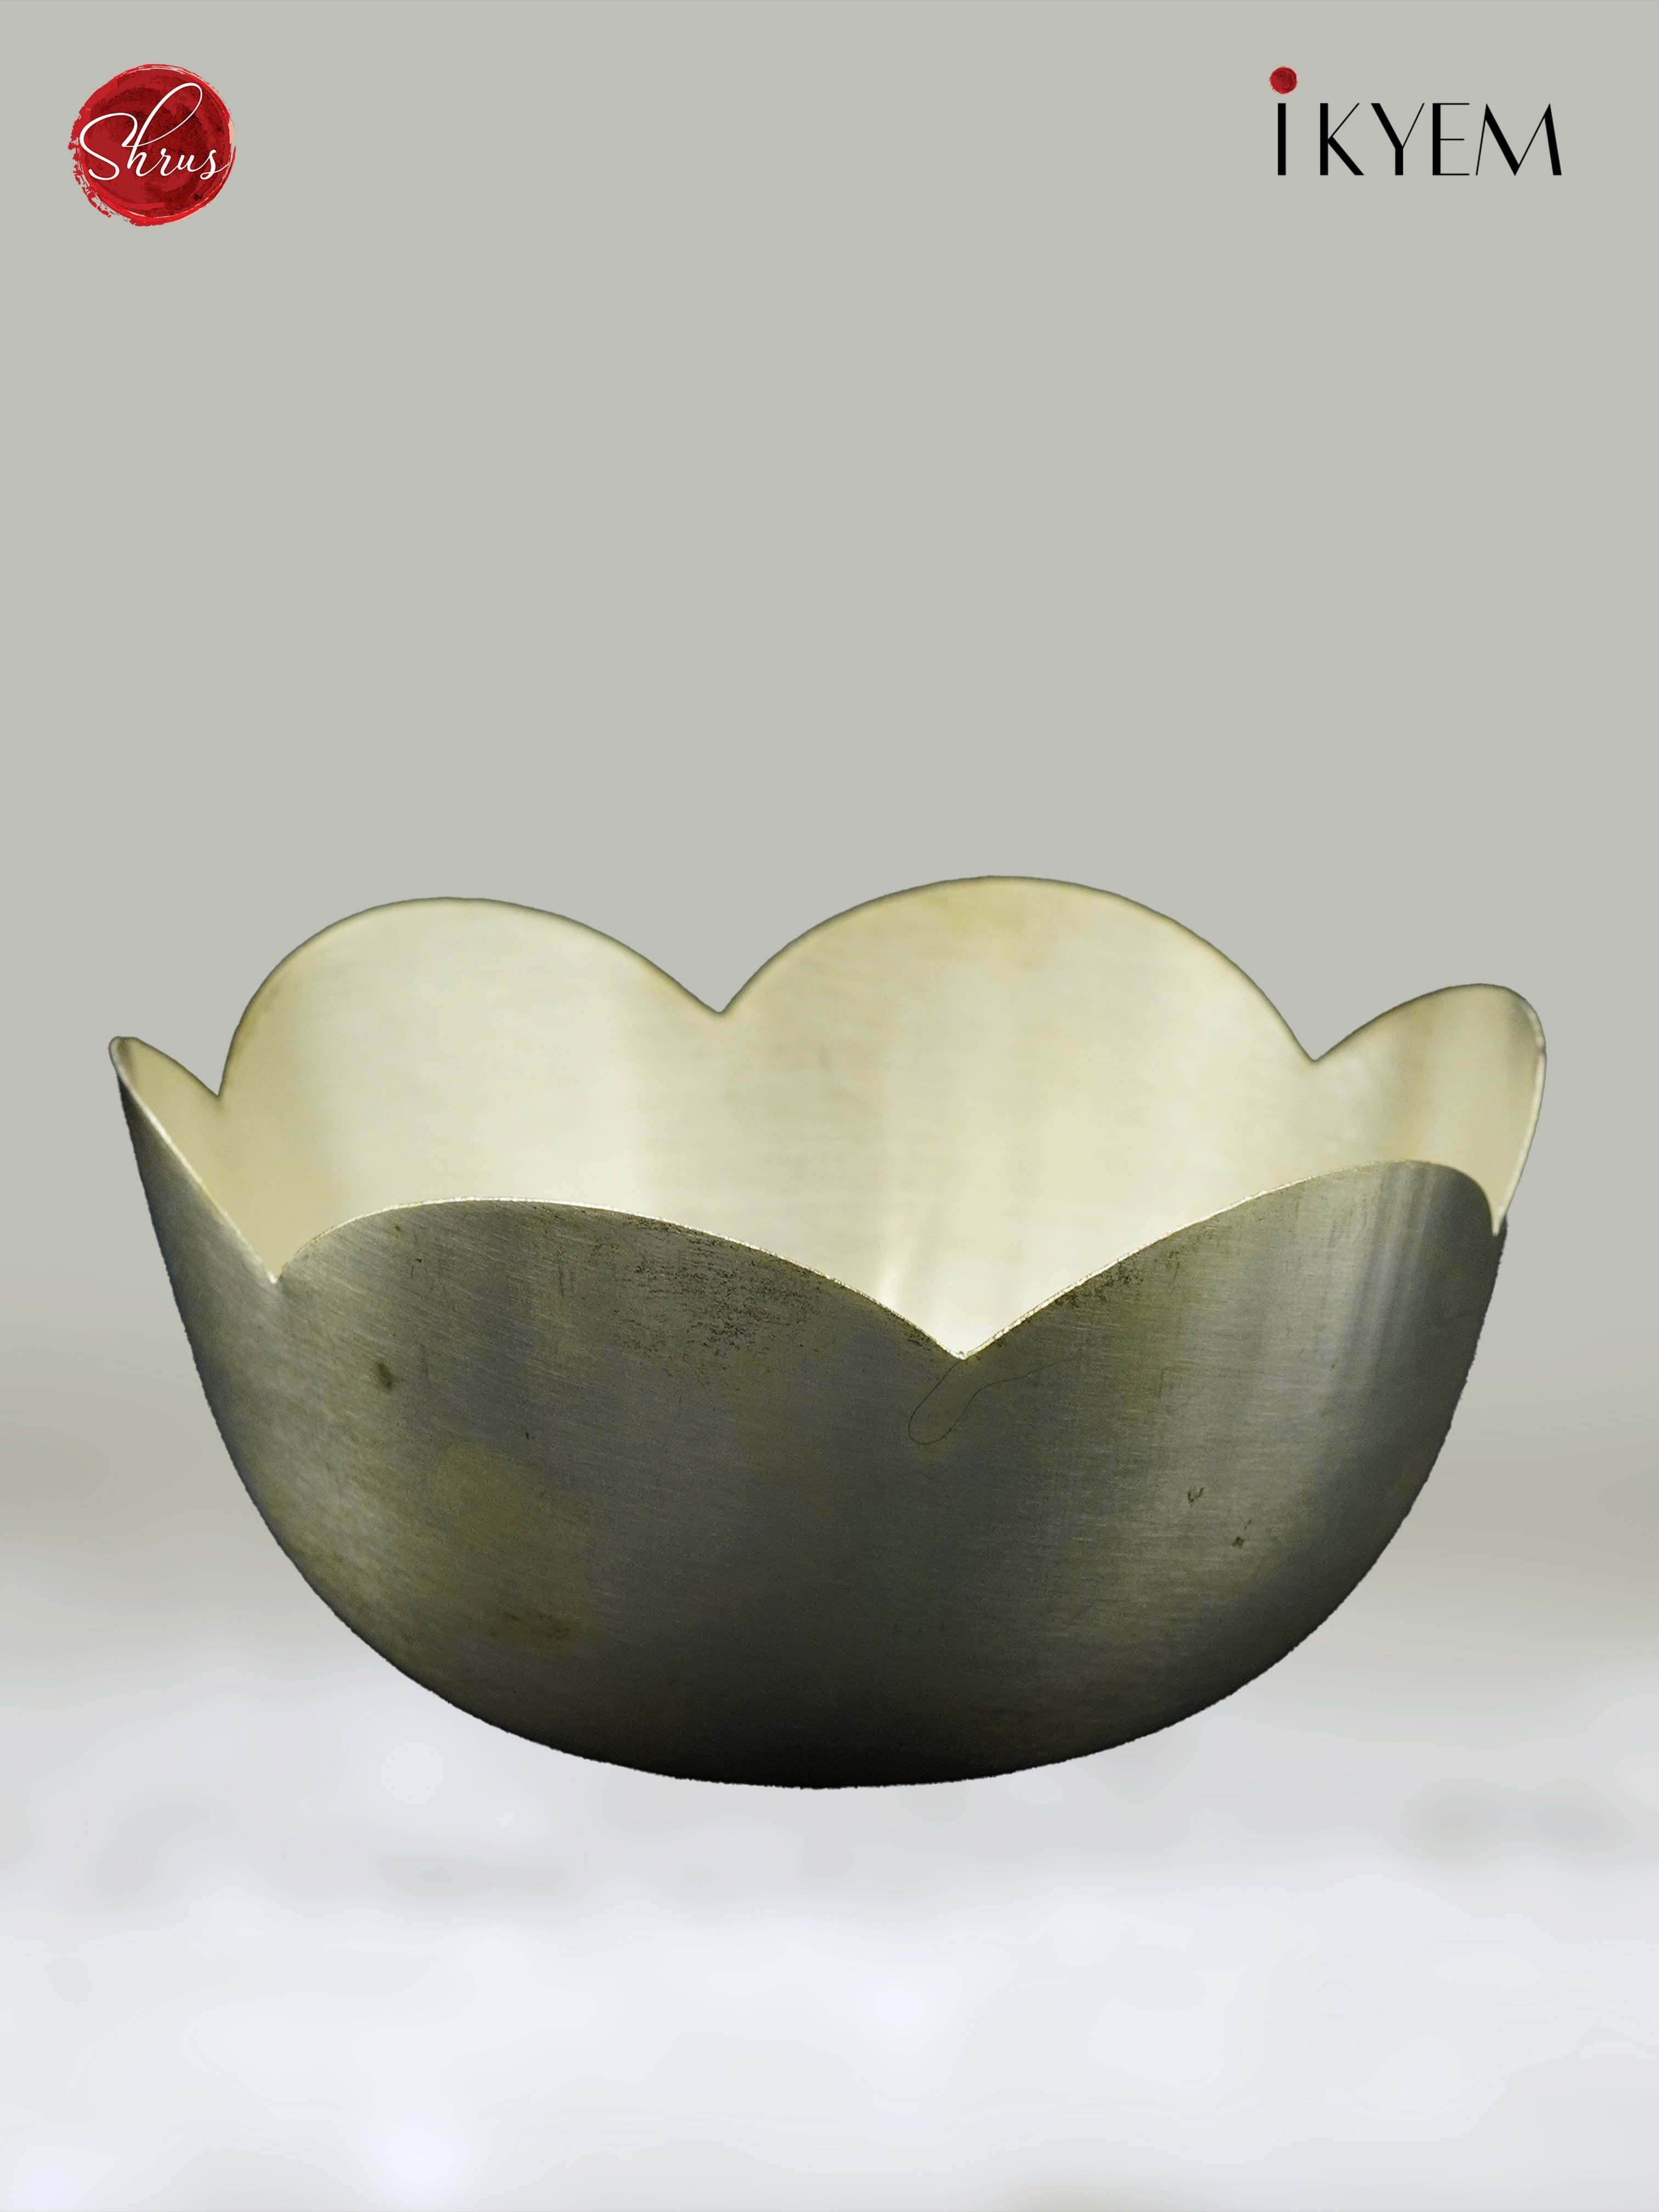 Lotus bowl -Return gift